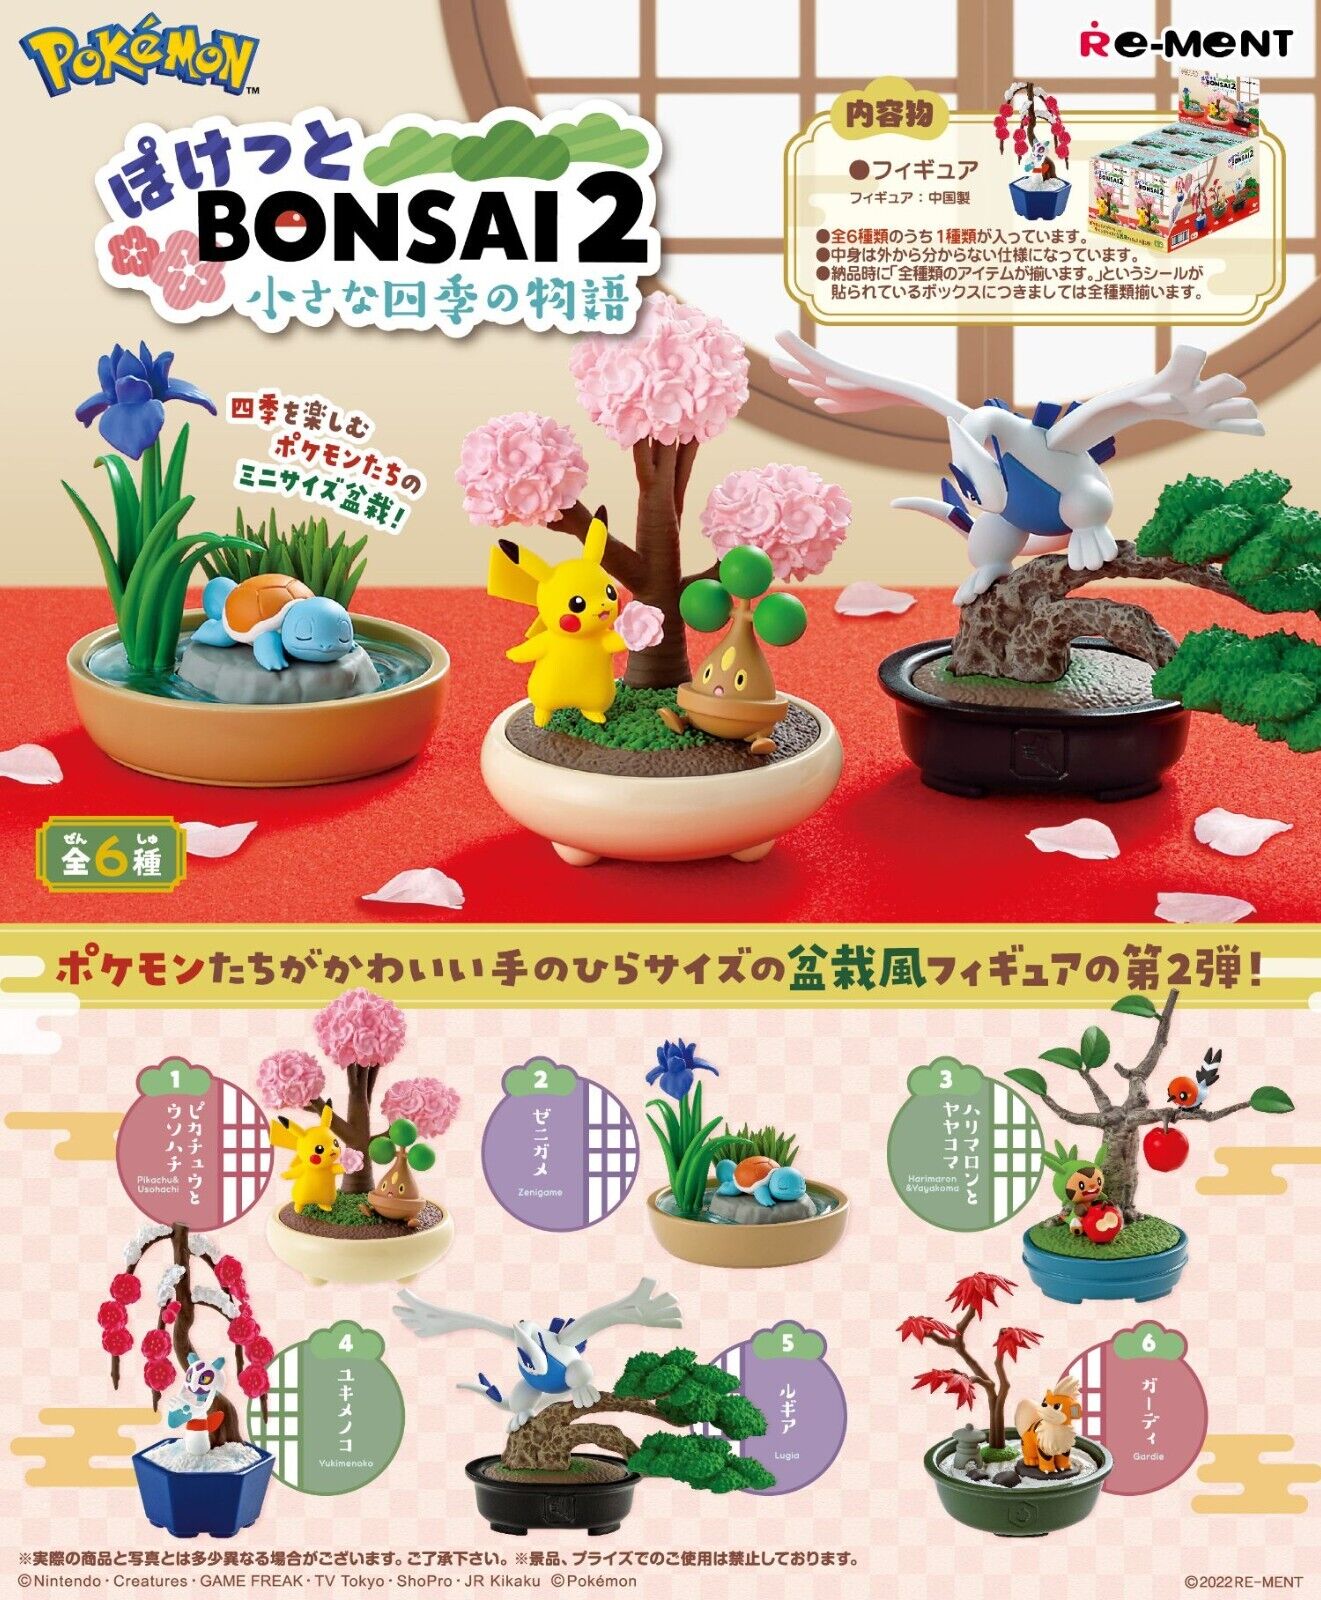 Re-ment Pokemon BONSAI 2 Four Seasons Pokémon Figure 6 Types Set Pocket Presale